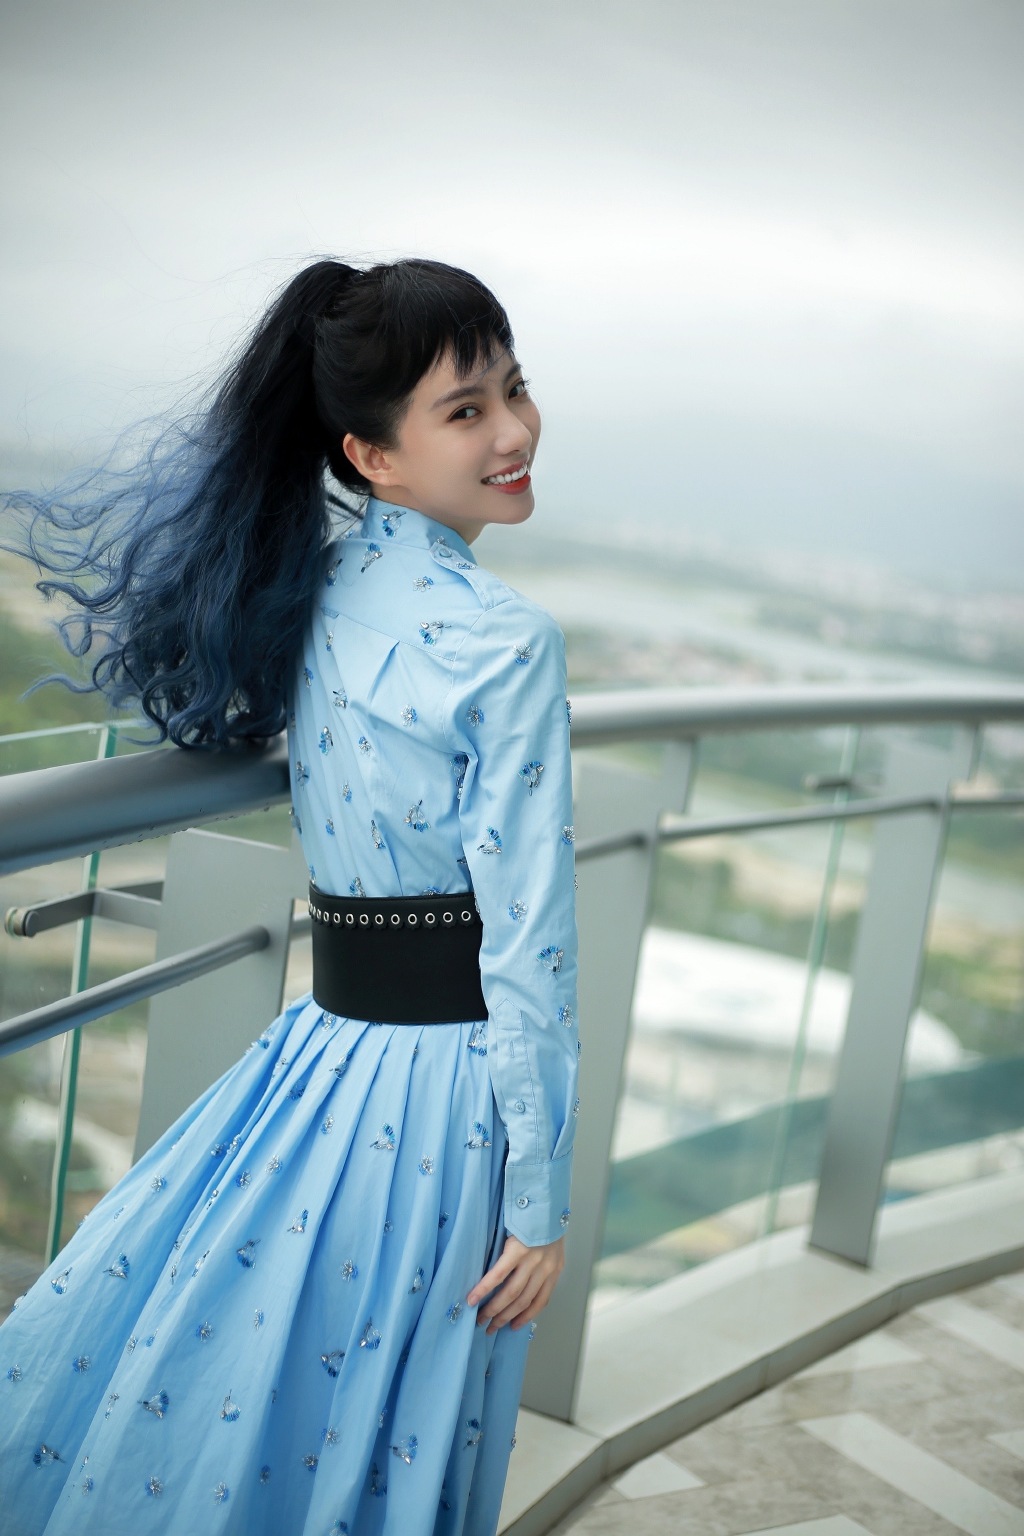 刘萌萌齐刘海长发搭配蓝色带水晶连衣裙气质写真照图片